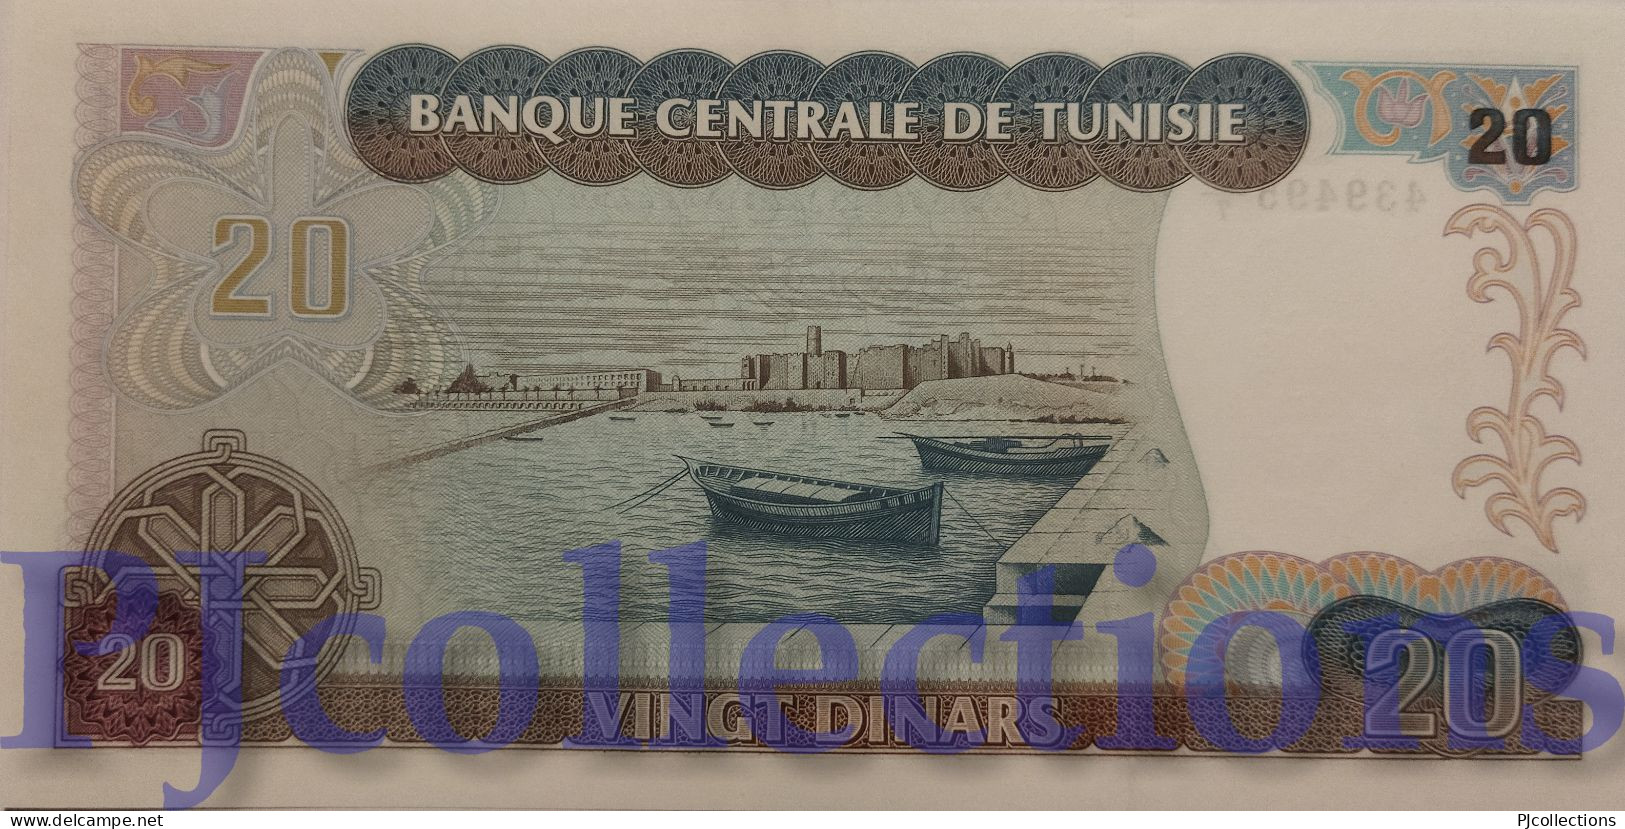 TUNISIA 20 DINARS 1980 PICK 77 UNC - Tunesien